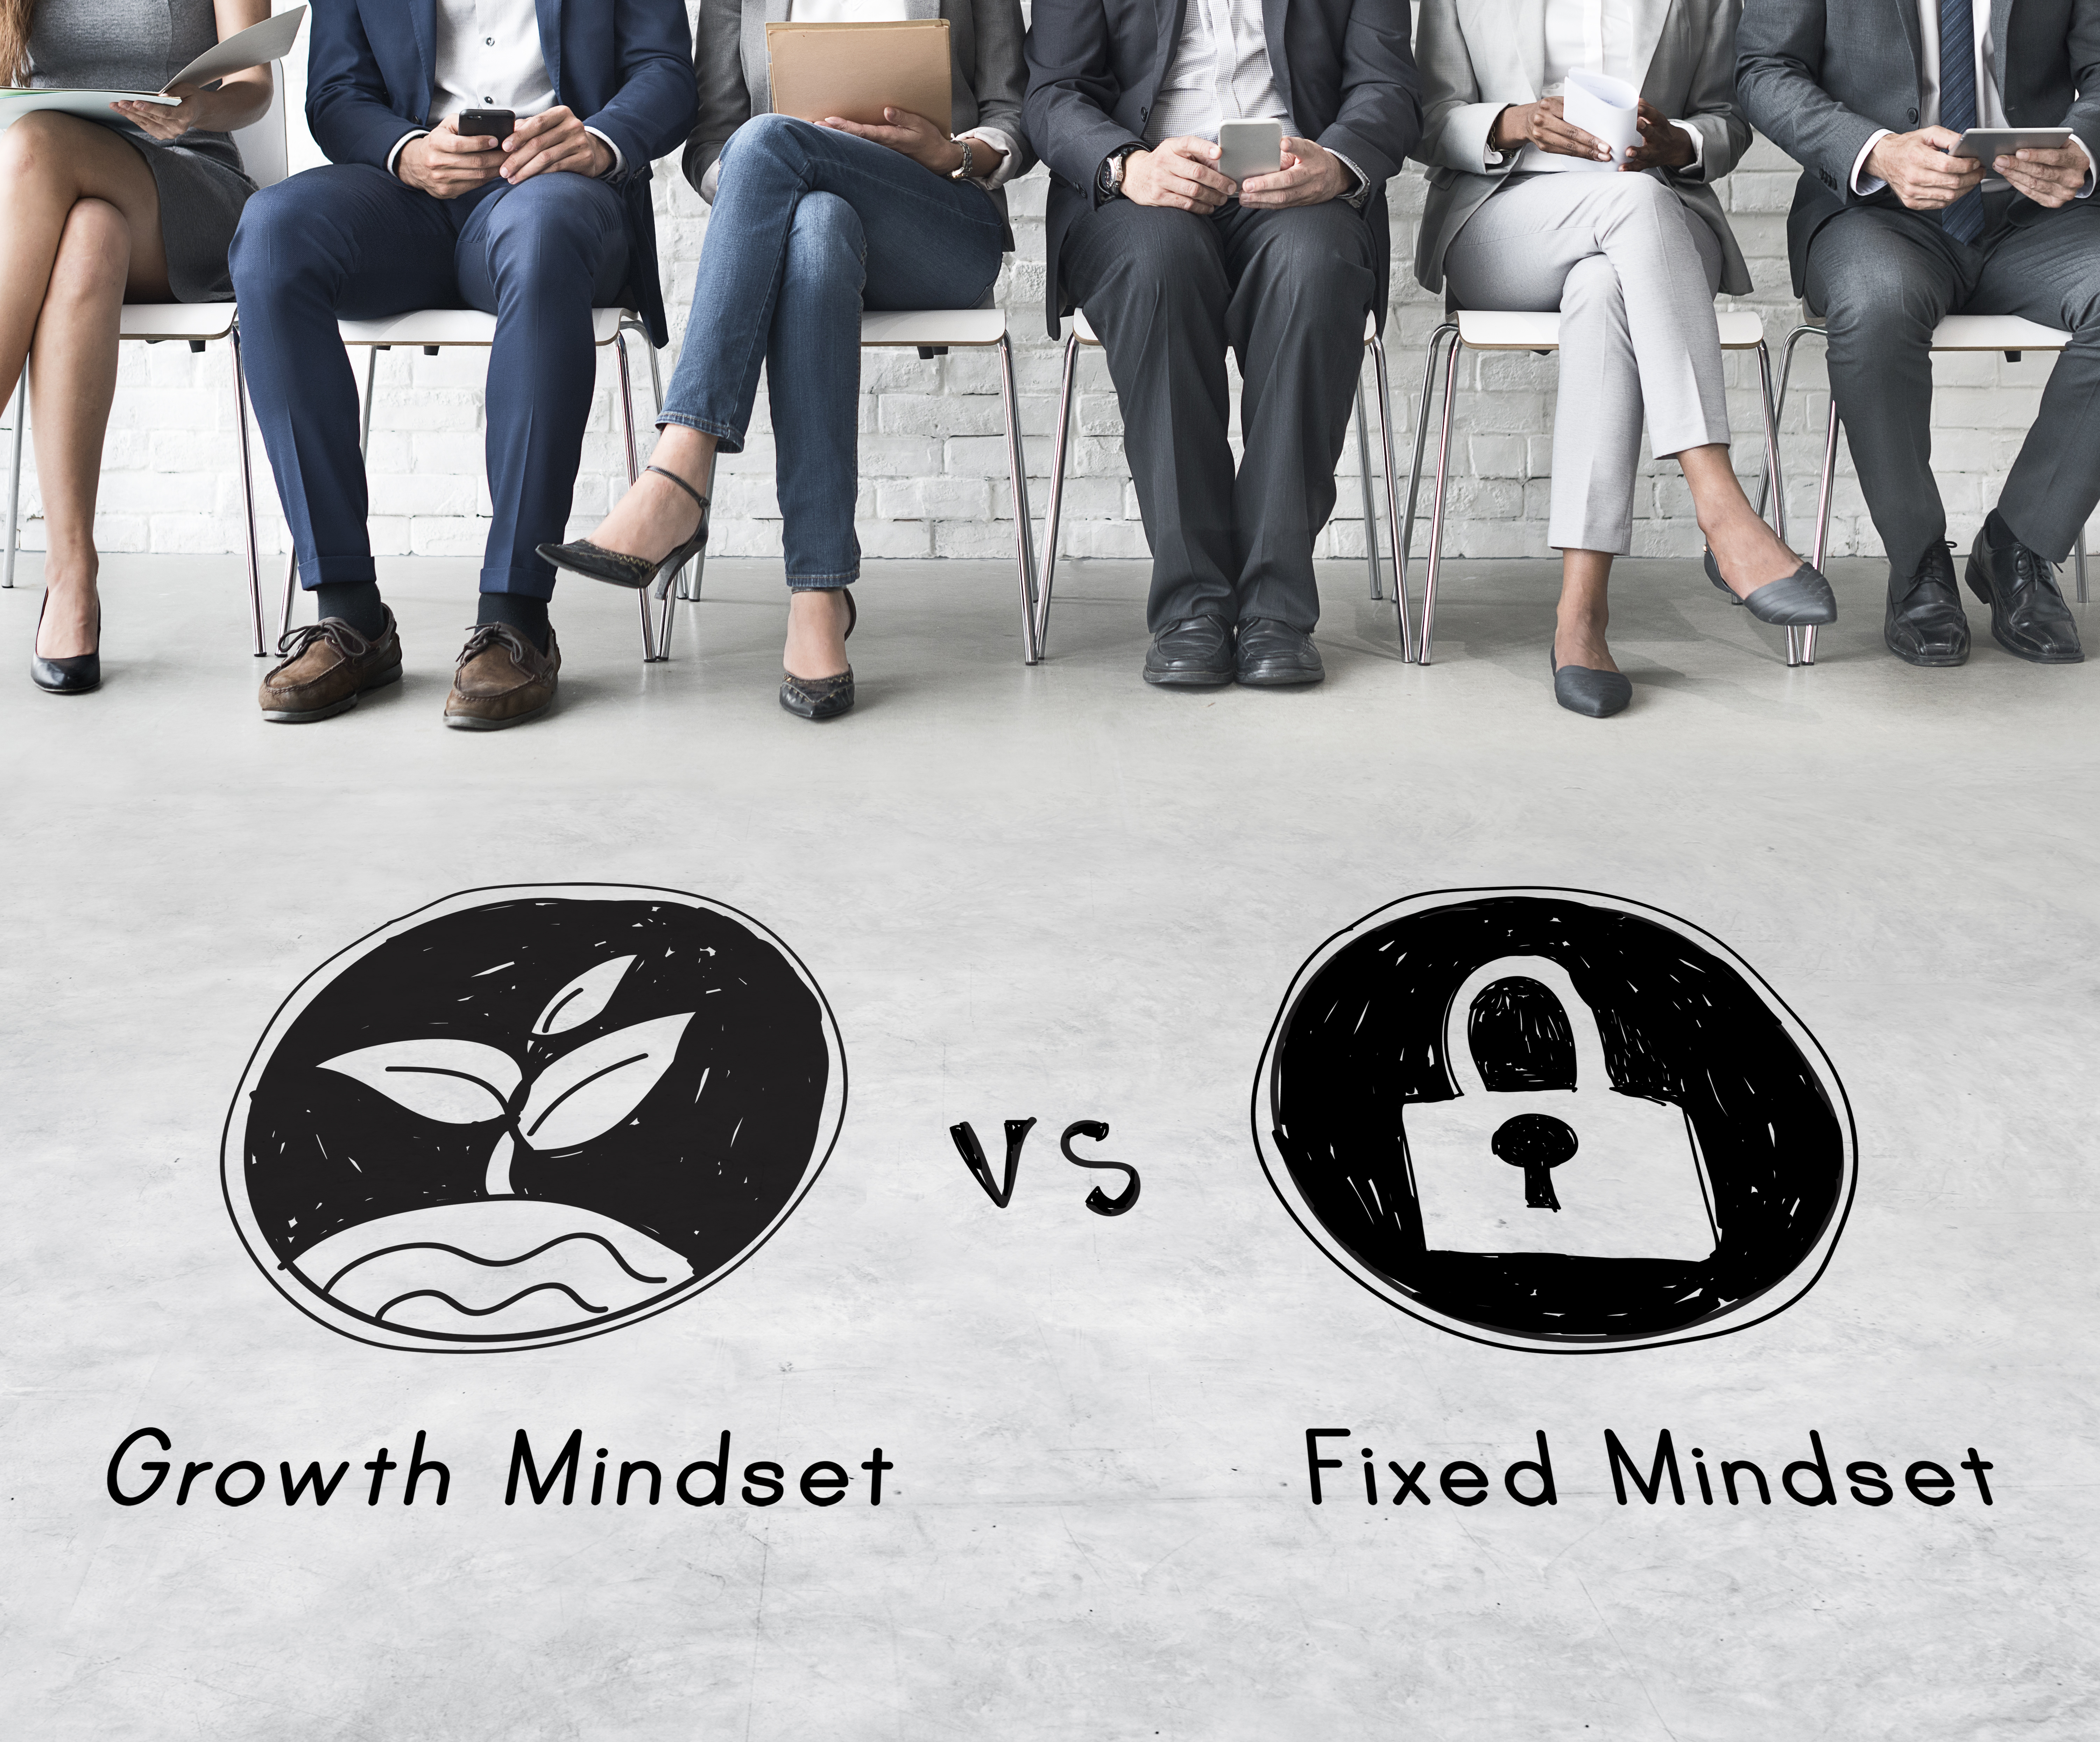 growth mindset leaders